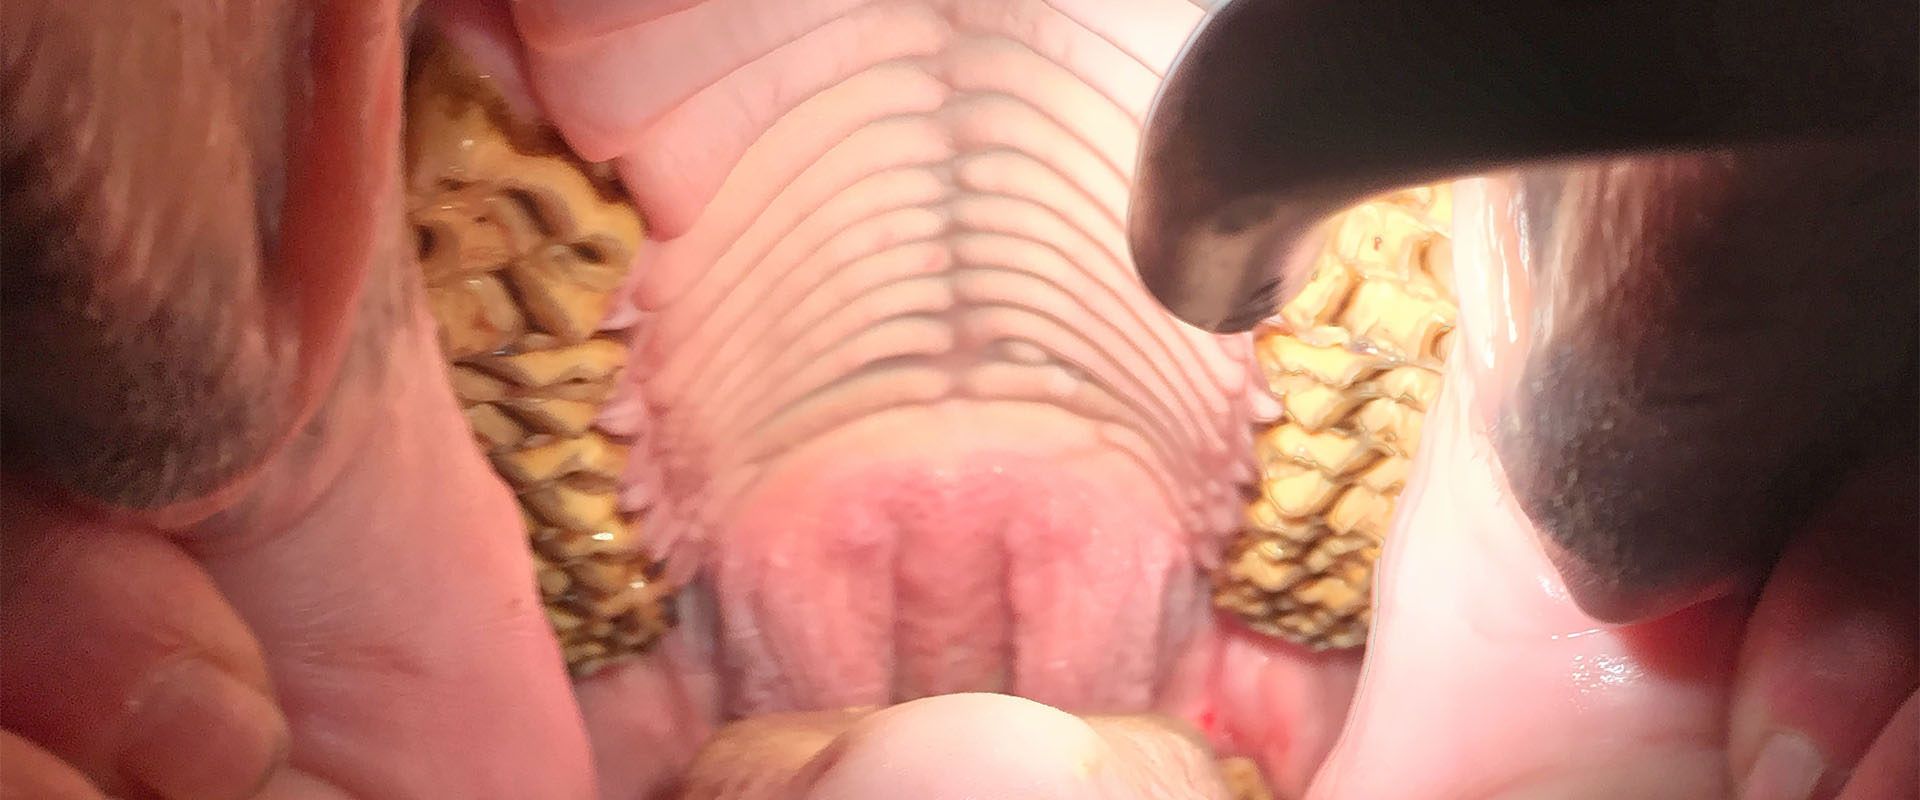 Hevosen suu- ja hammastutkimus